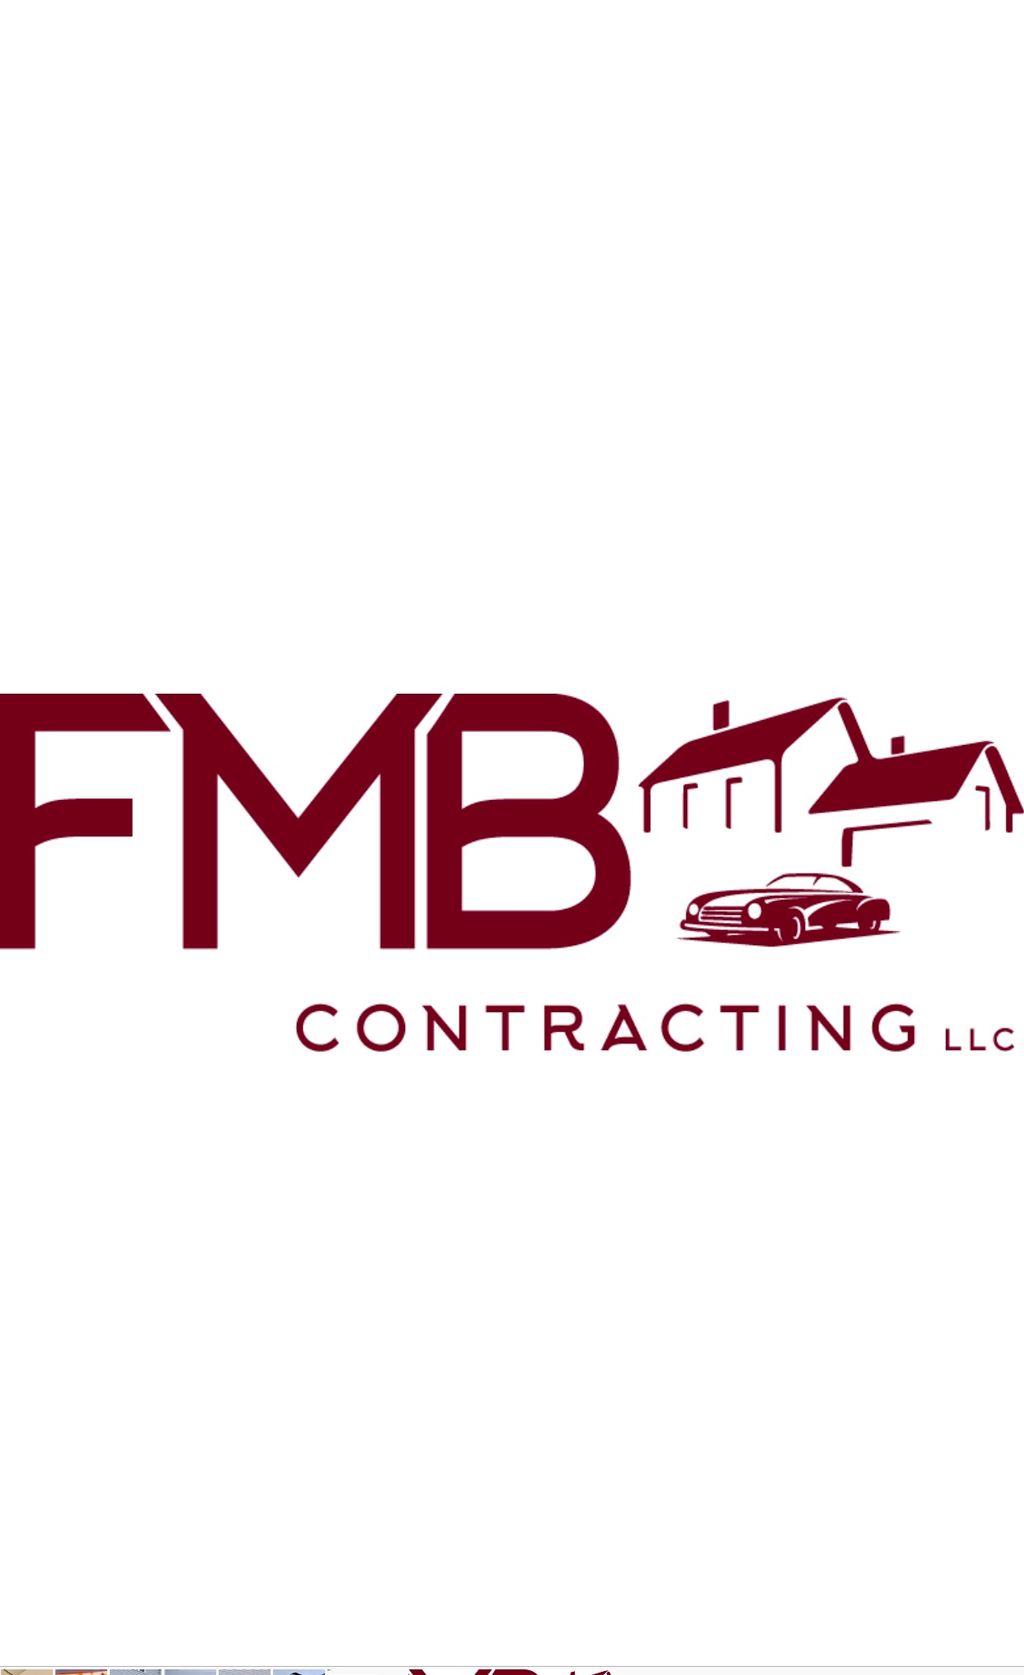 FMB Contracting LLC